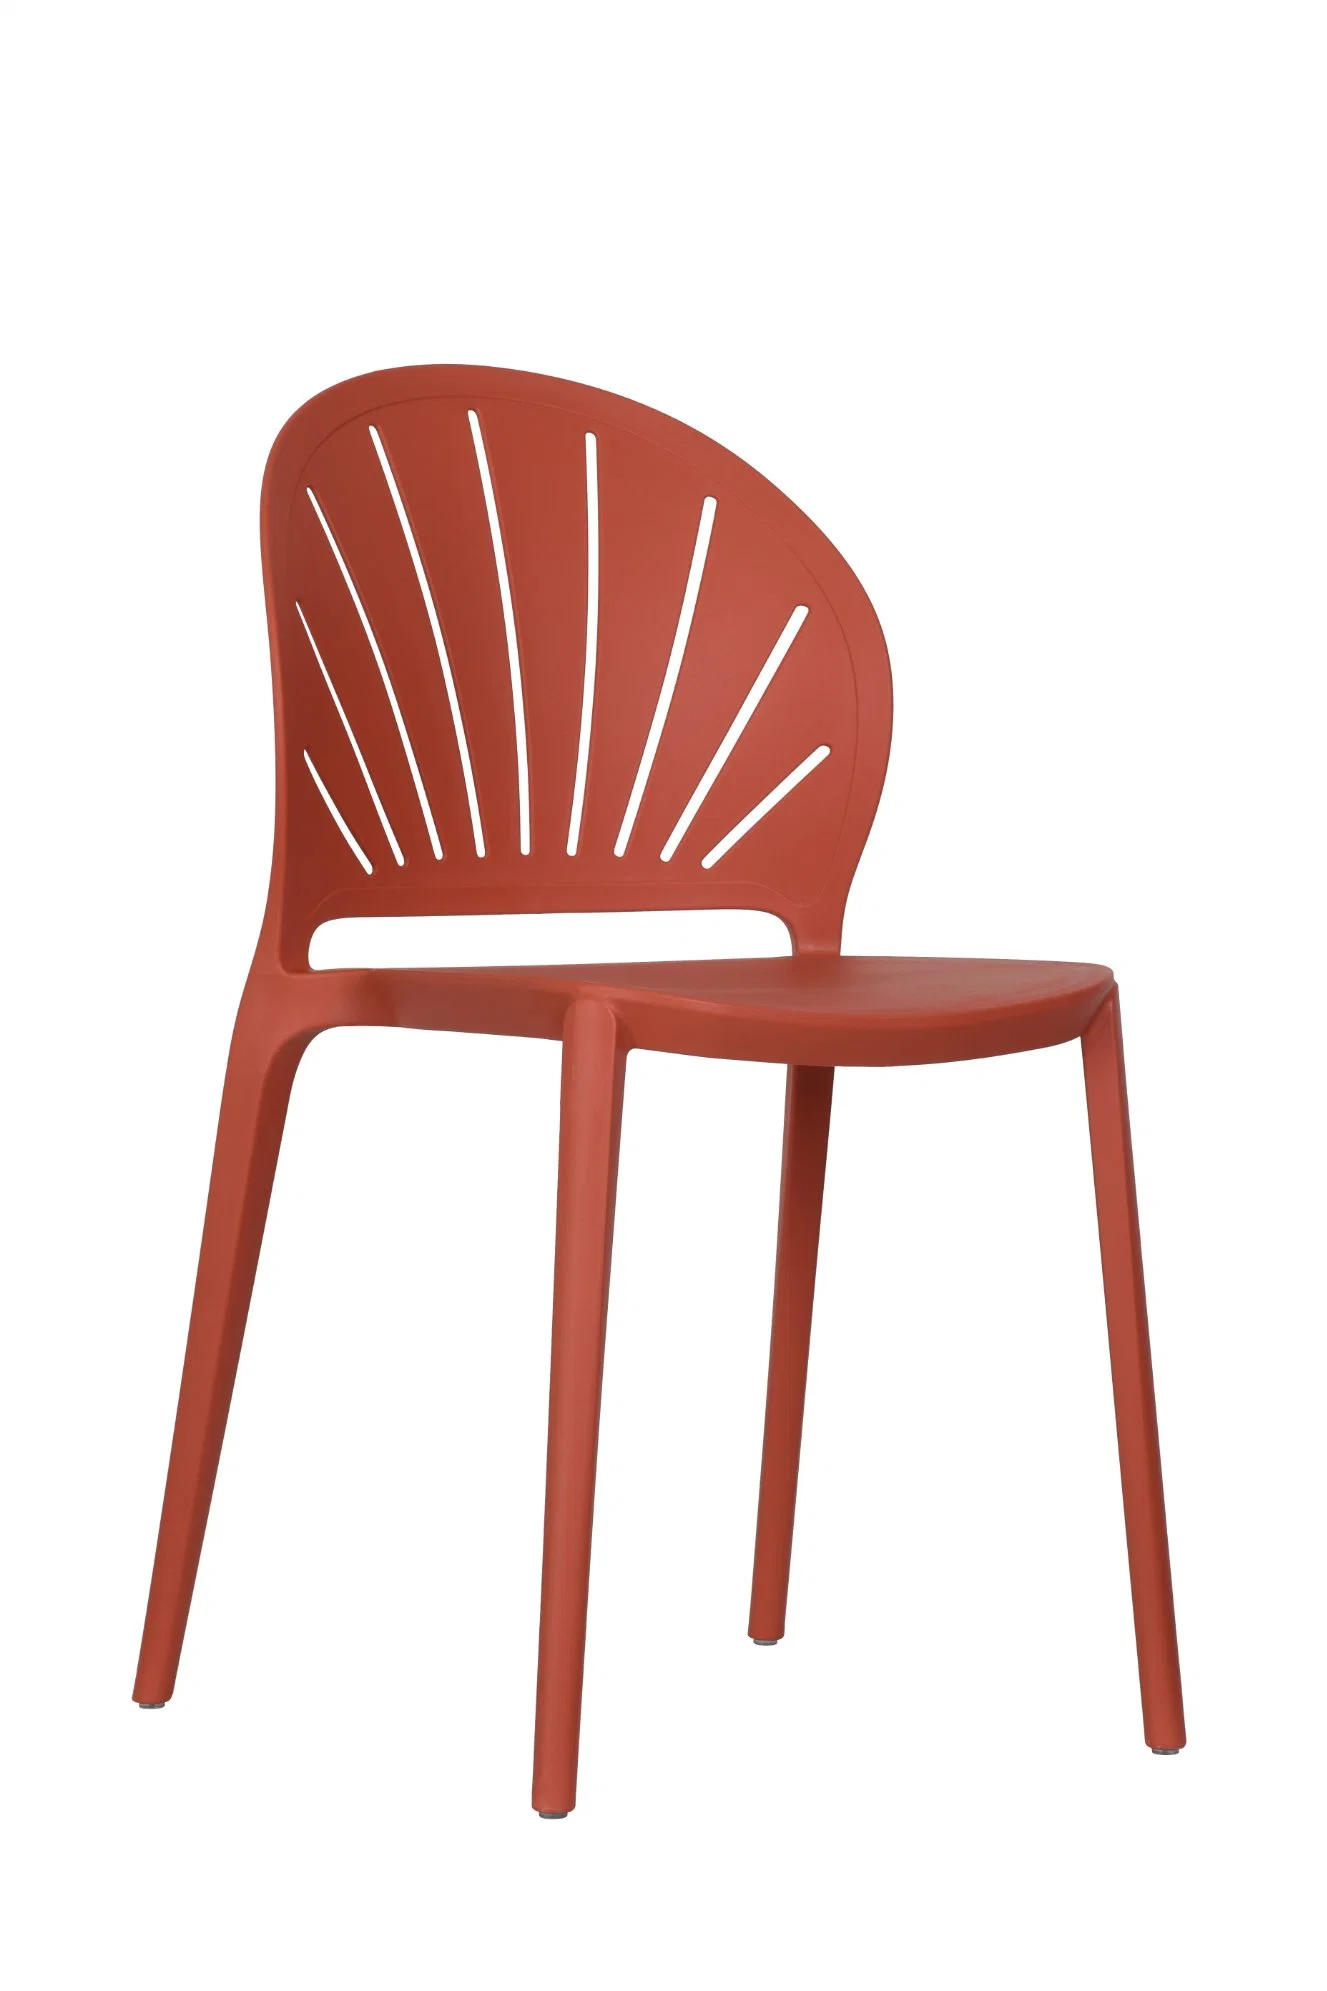 Vente en gros de plastique chaise de salle à manger Meubles de salle à manger pour l'hôtel ou Restaurant usine de haute qualité PP chaise en plastique